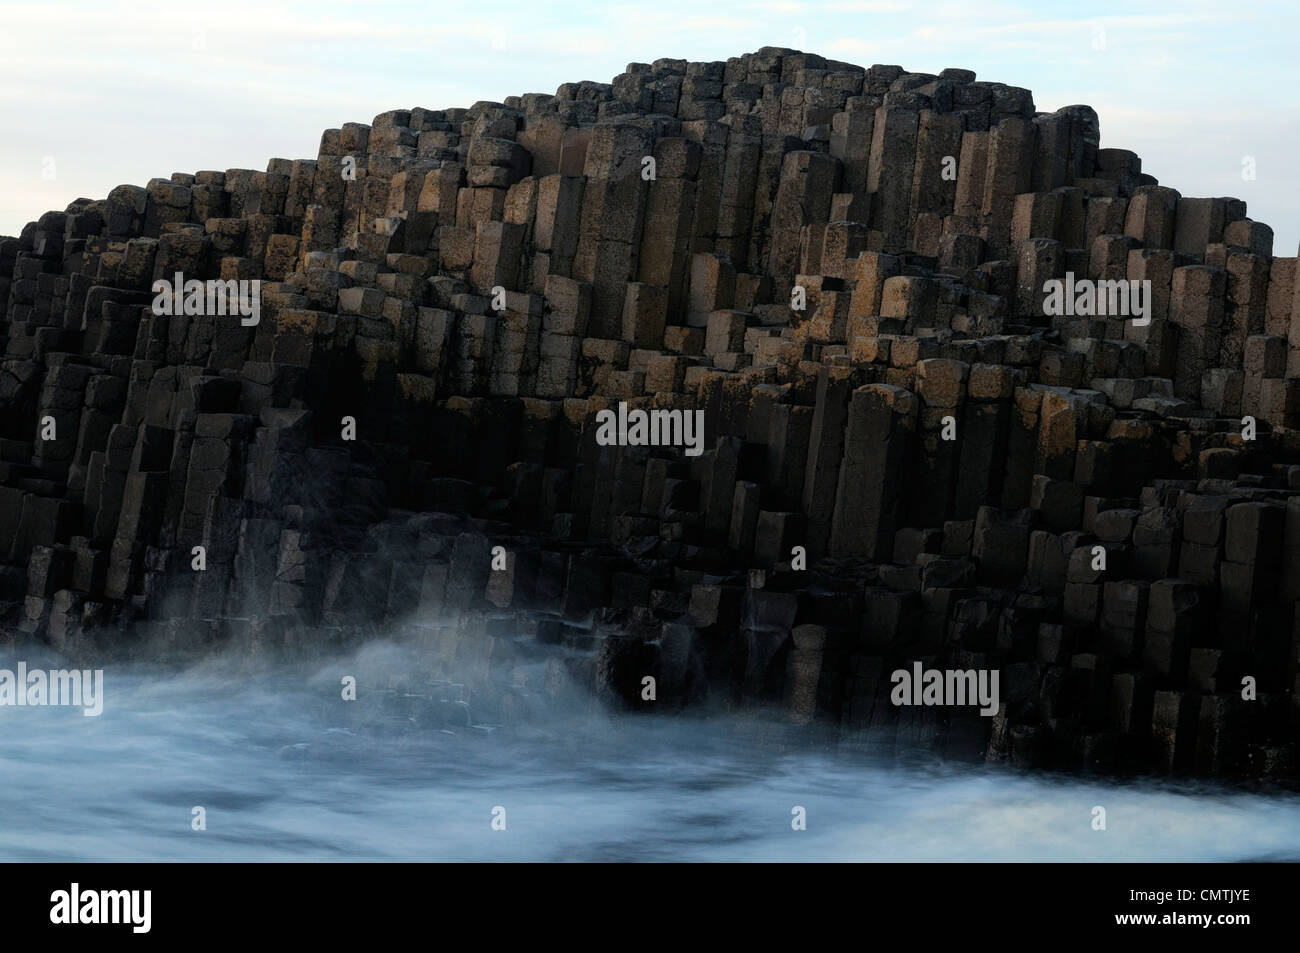 Colonnes de basalte de forme hexagonale Giant's Causeway le comté d'Antrim en Irlande du Nord Banque D'Images